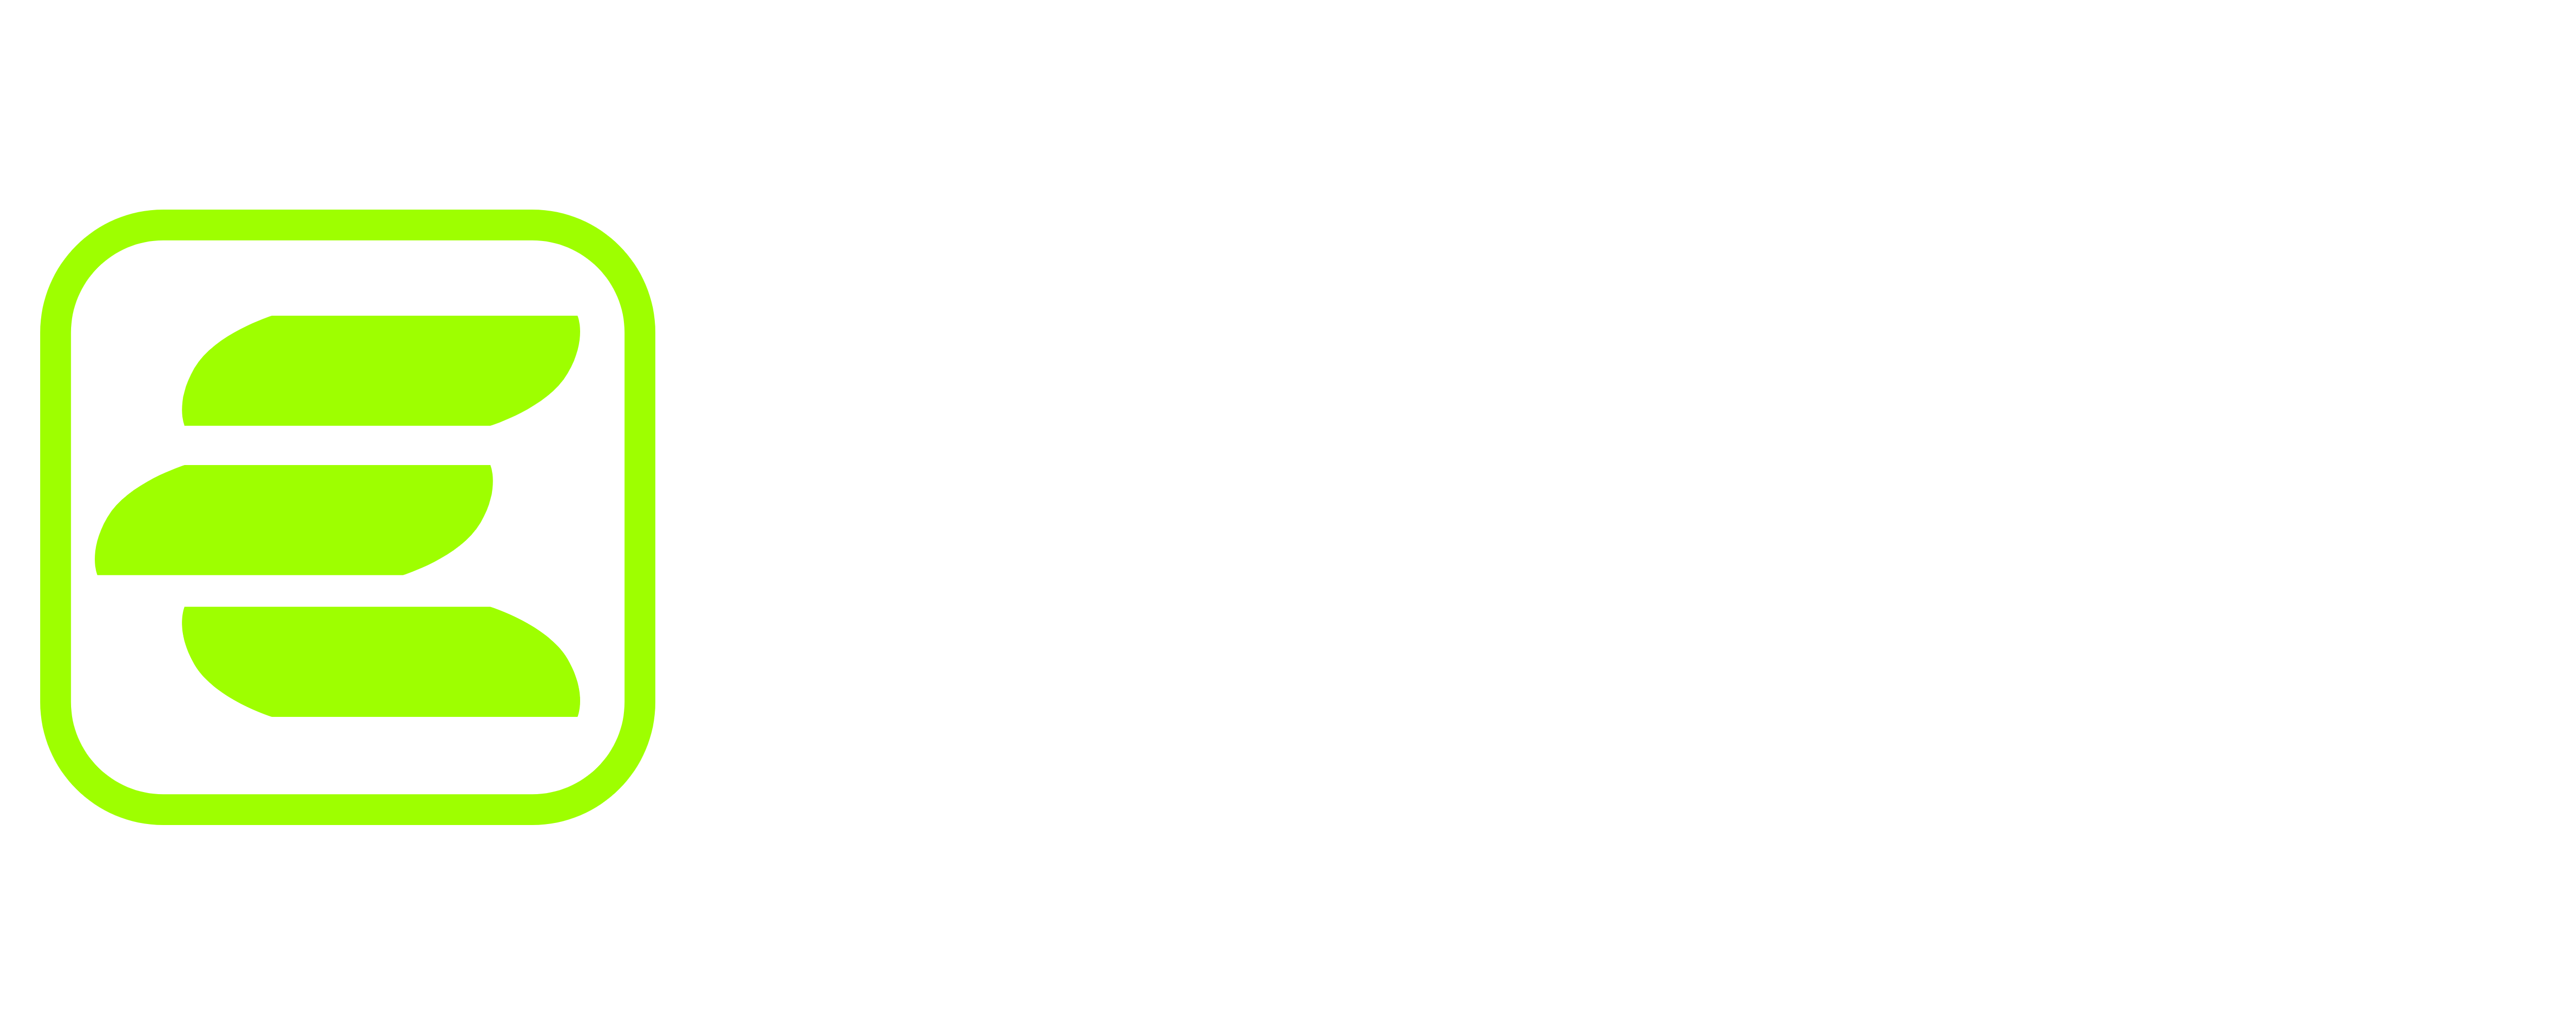 Estobi Nutrition